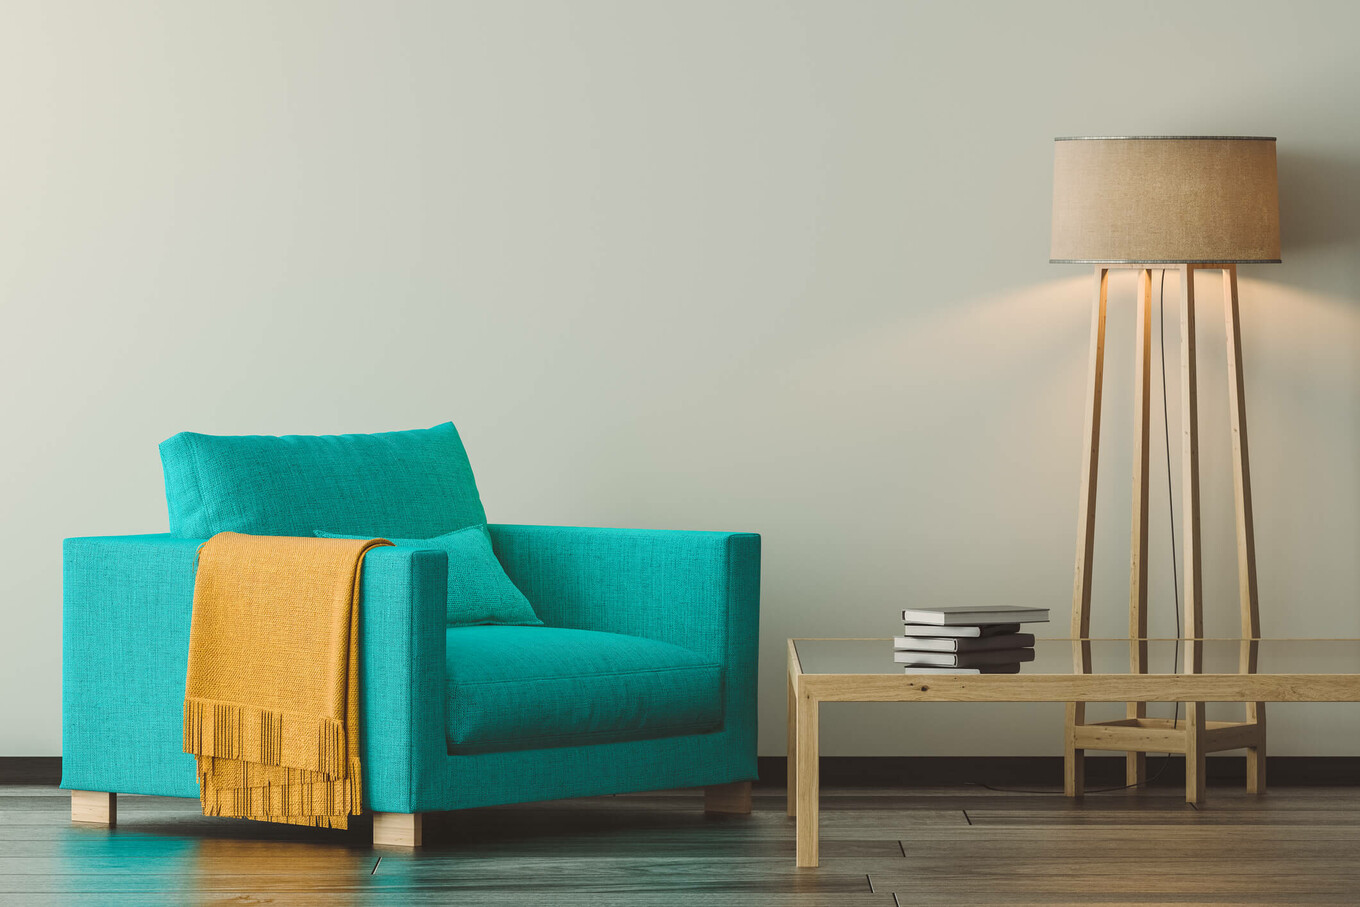 Eine passende Farbkombination der Möbel, Vorhänge, Lampen und vom Boden